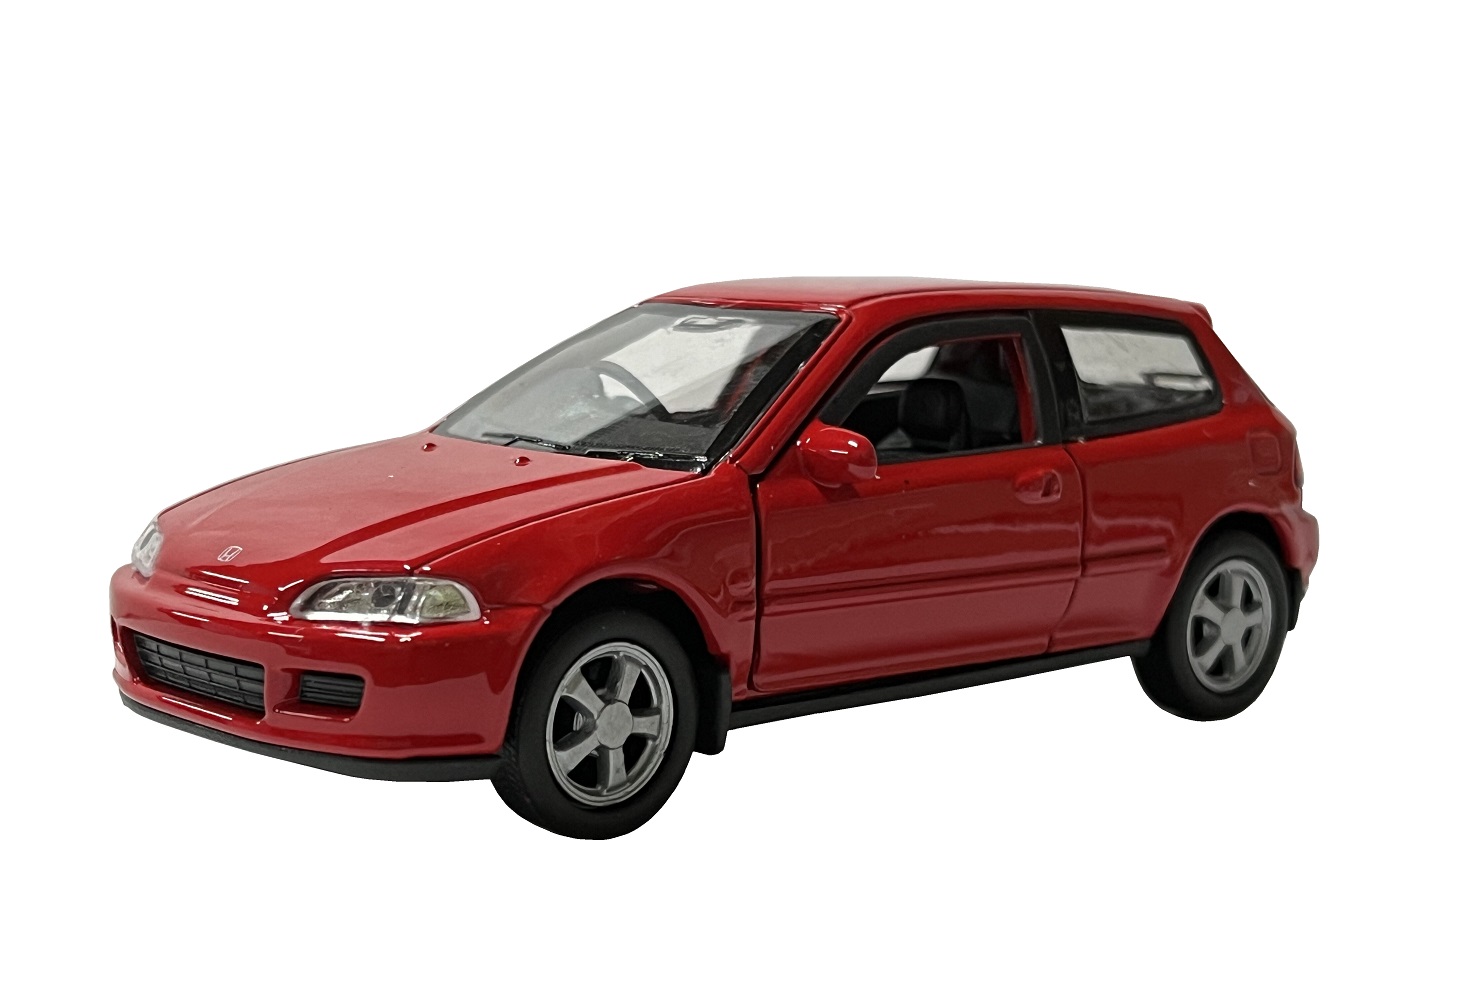 Модель машины Welly 1:38 Honda Civic EG6 красный 43813 модель для сборки motormax автомобиль honda civic coupe 2000 года 1 24 75120 7